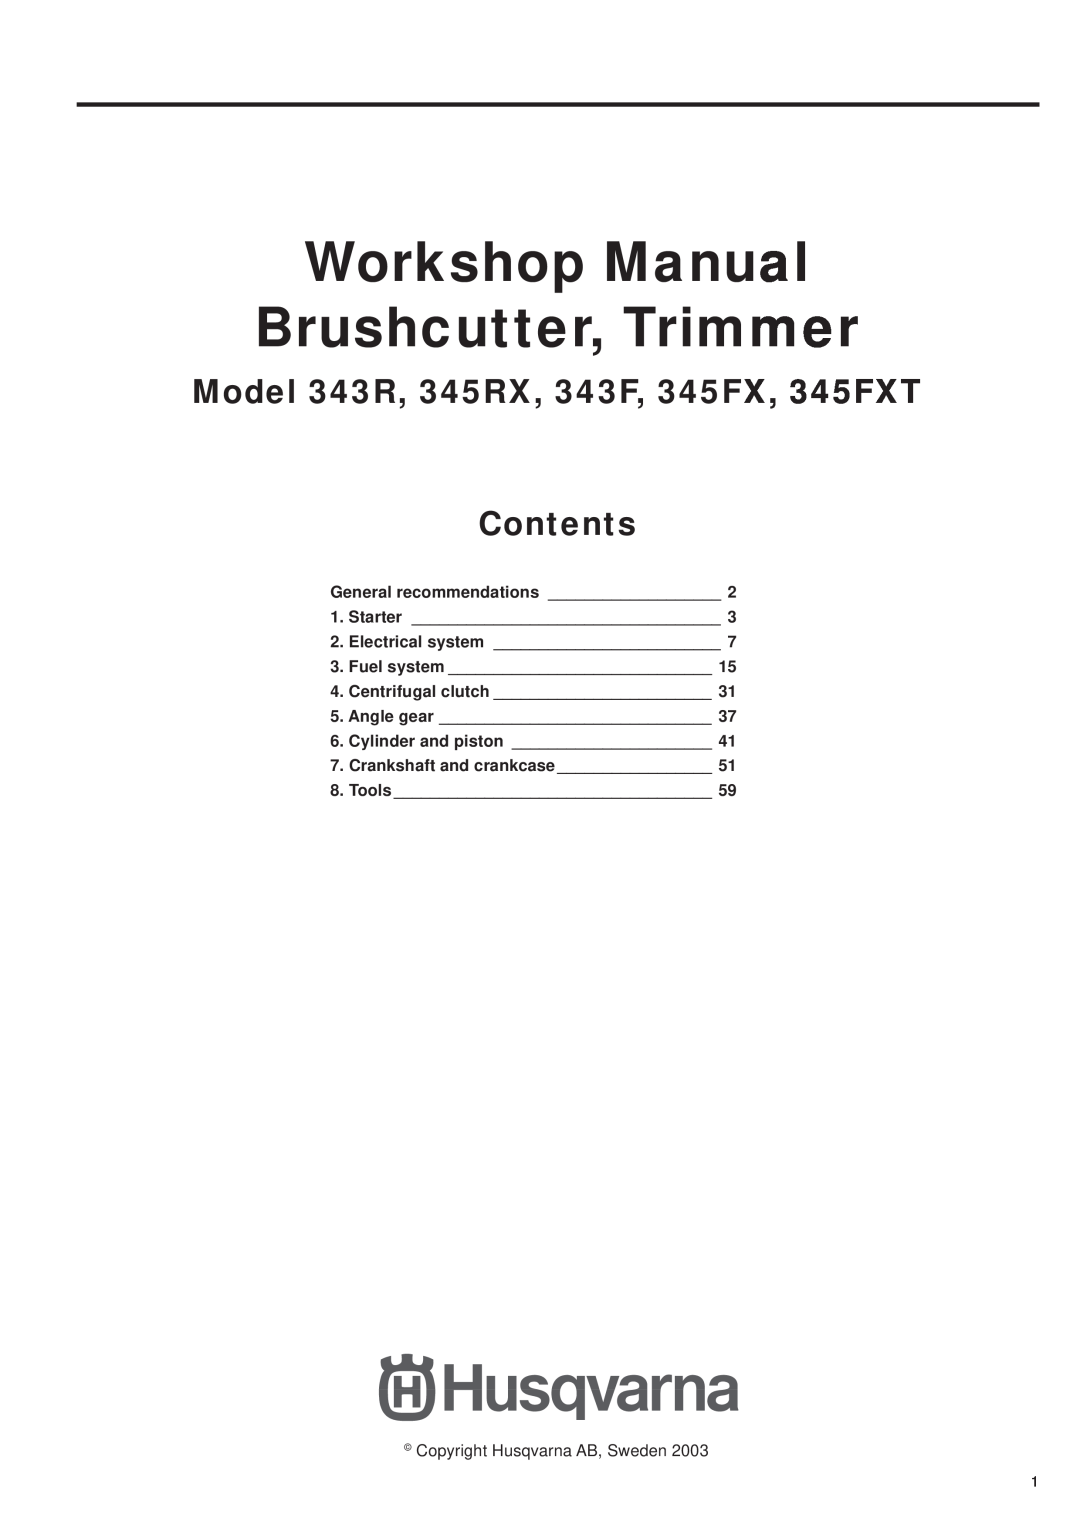 Husqvarna manual Model 343R, 345RX, 343F, 345FX, 345FXT Contents, General recommendations ___________________ 